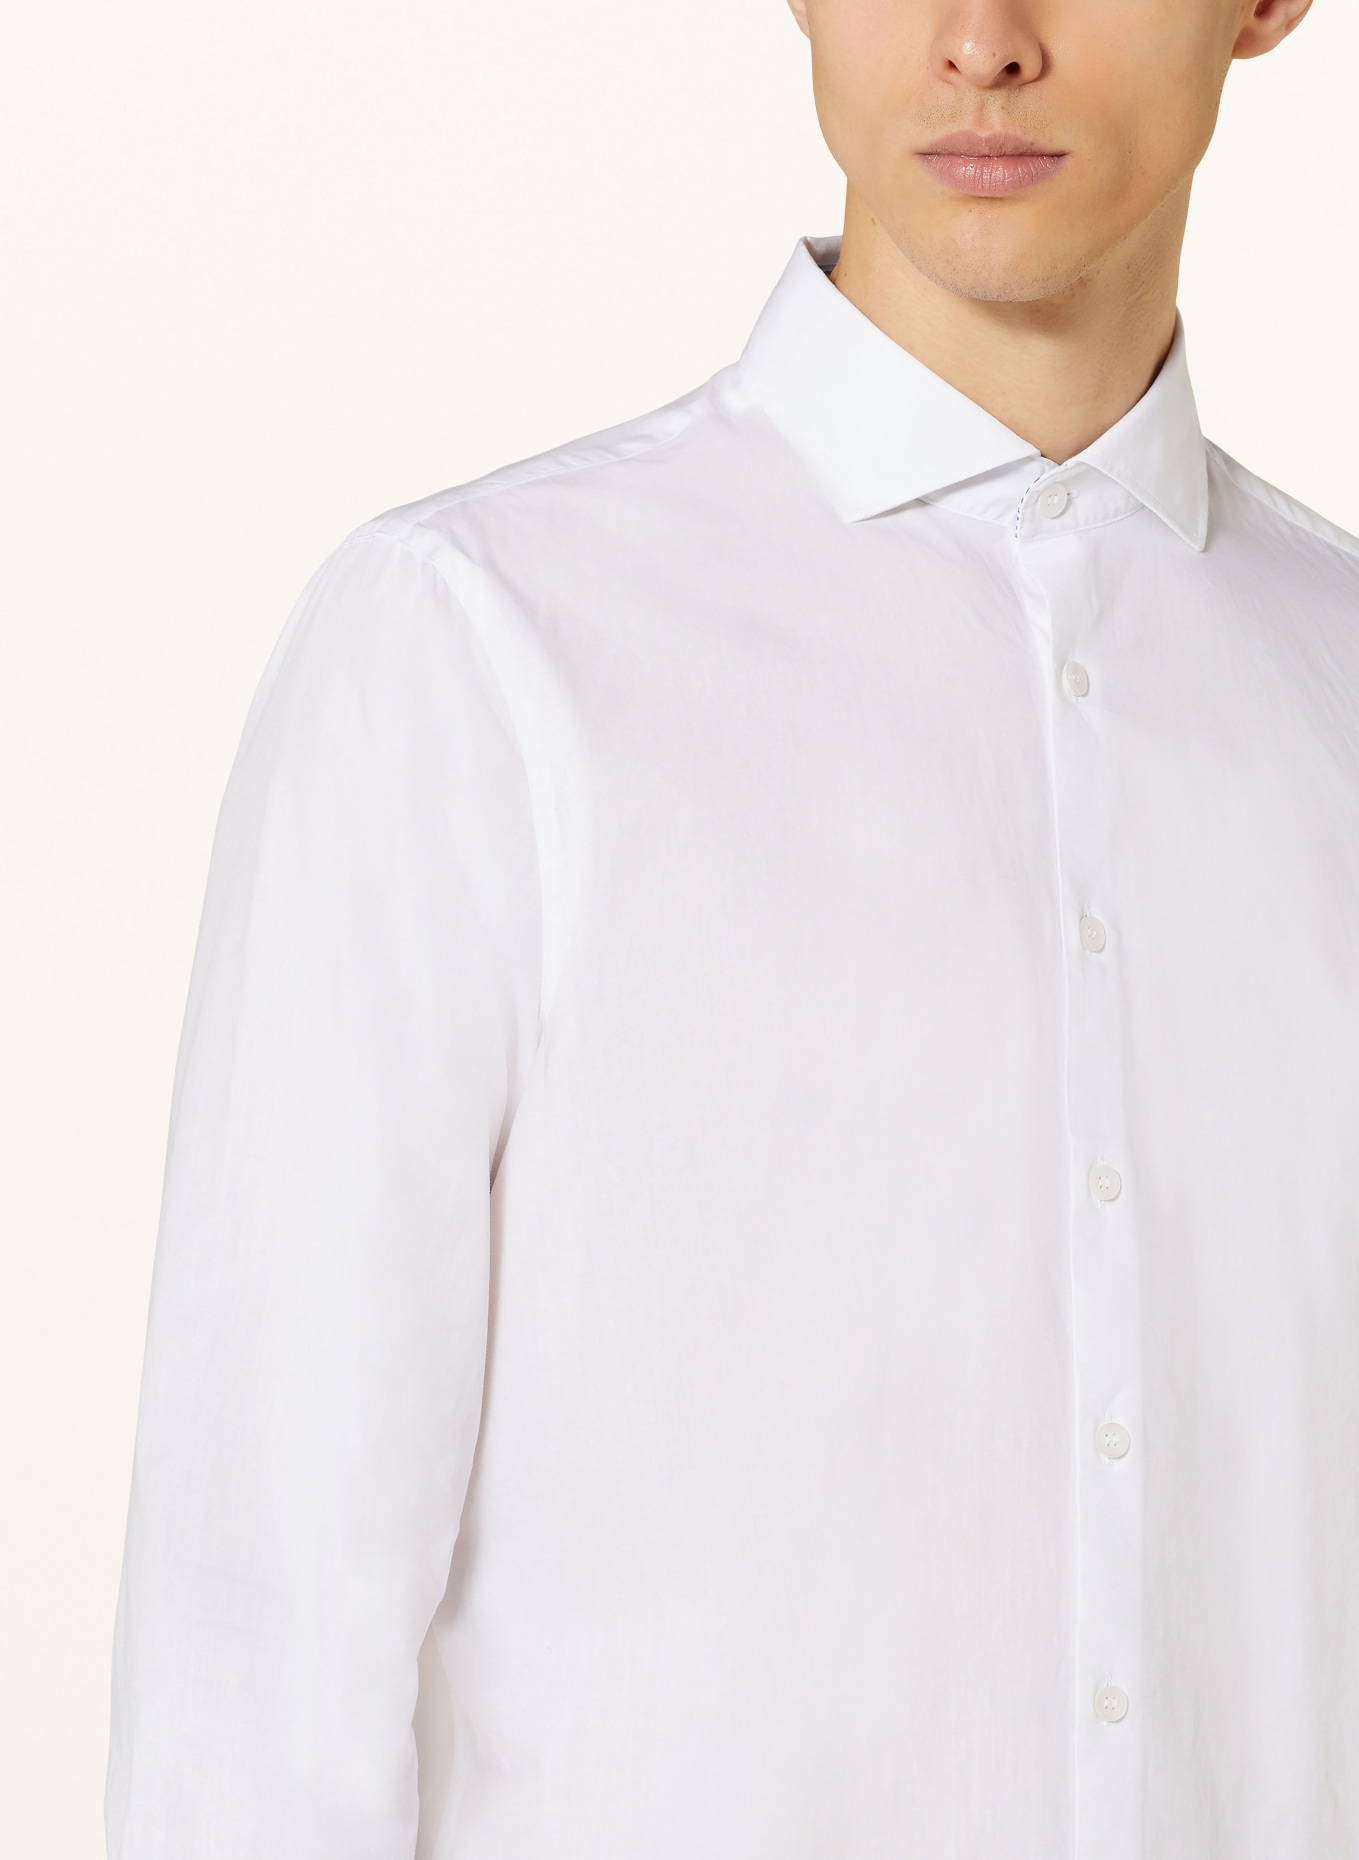 MAERZ MUENCHEN Hemd Modern Fit, Farbe: WEISS (Bild 4)